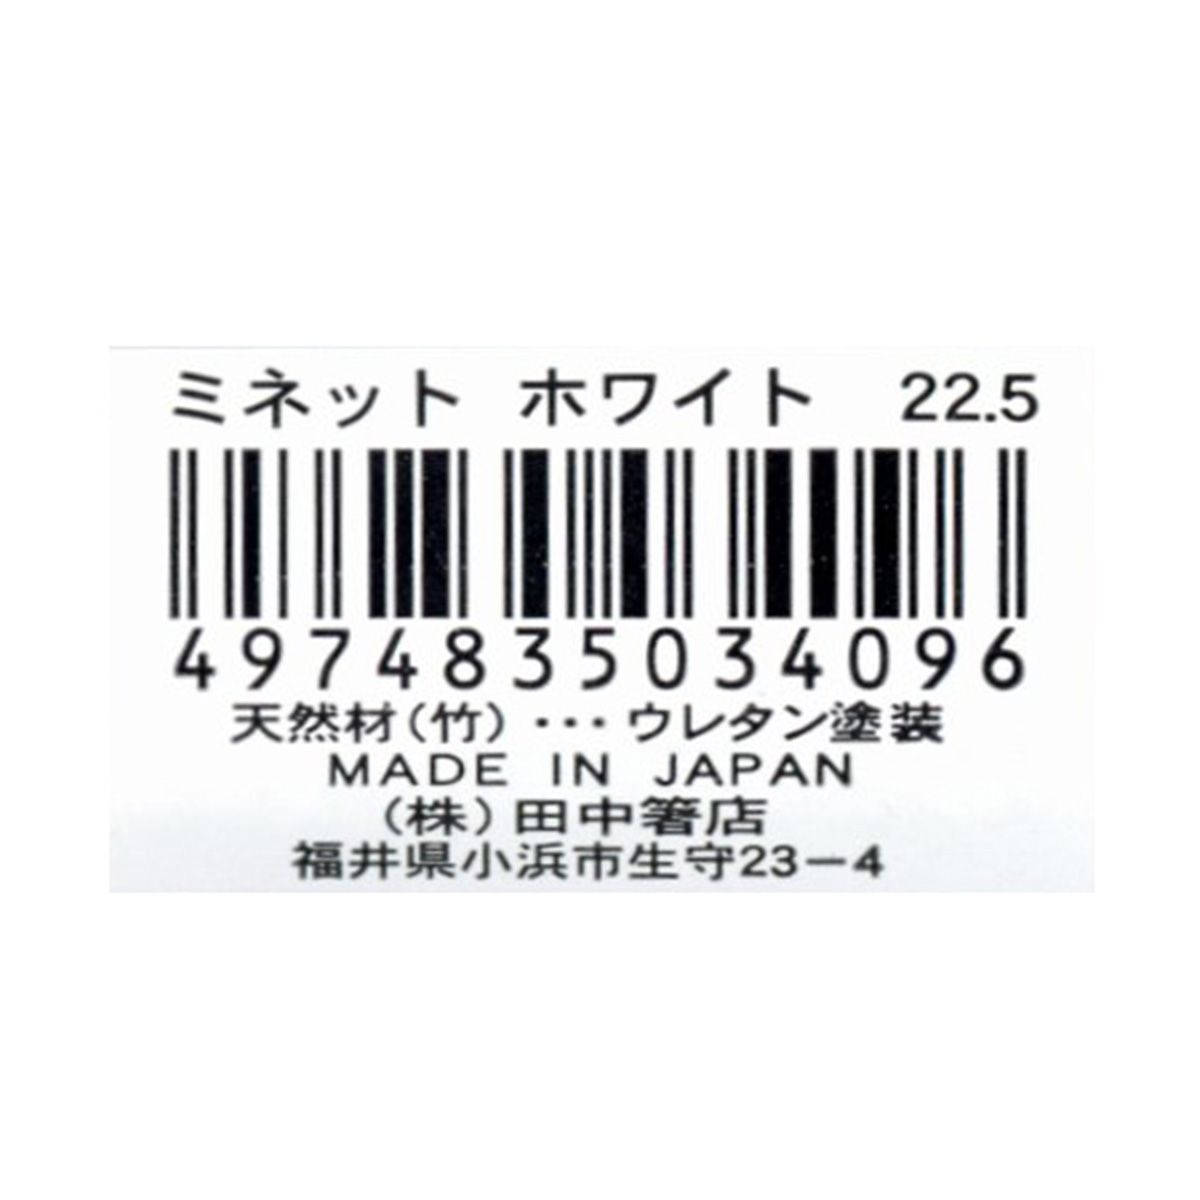 お箸 天然竹製  ミネット箸 ホワイト 22.5cm 9001/345947